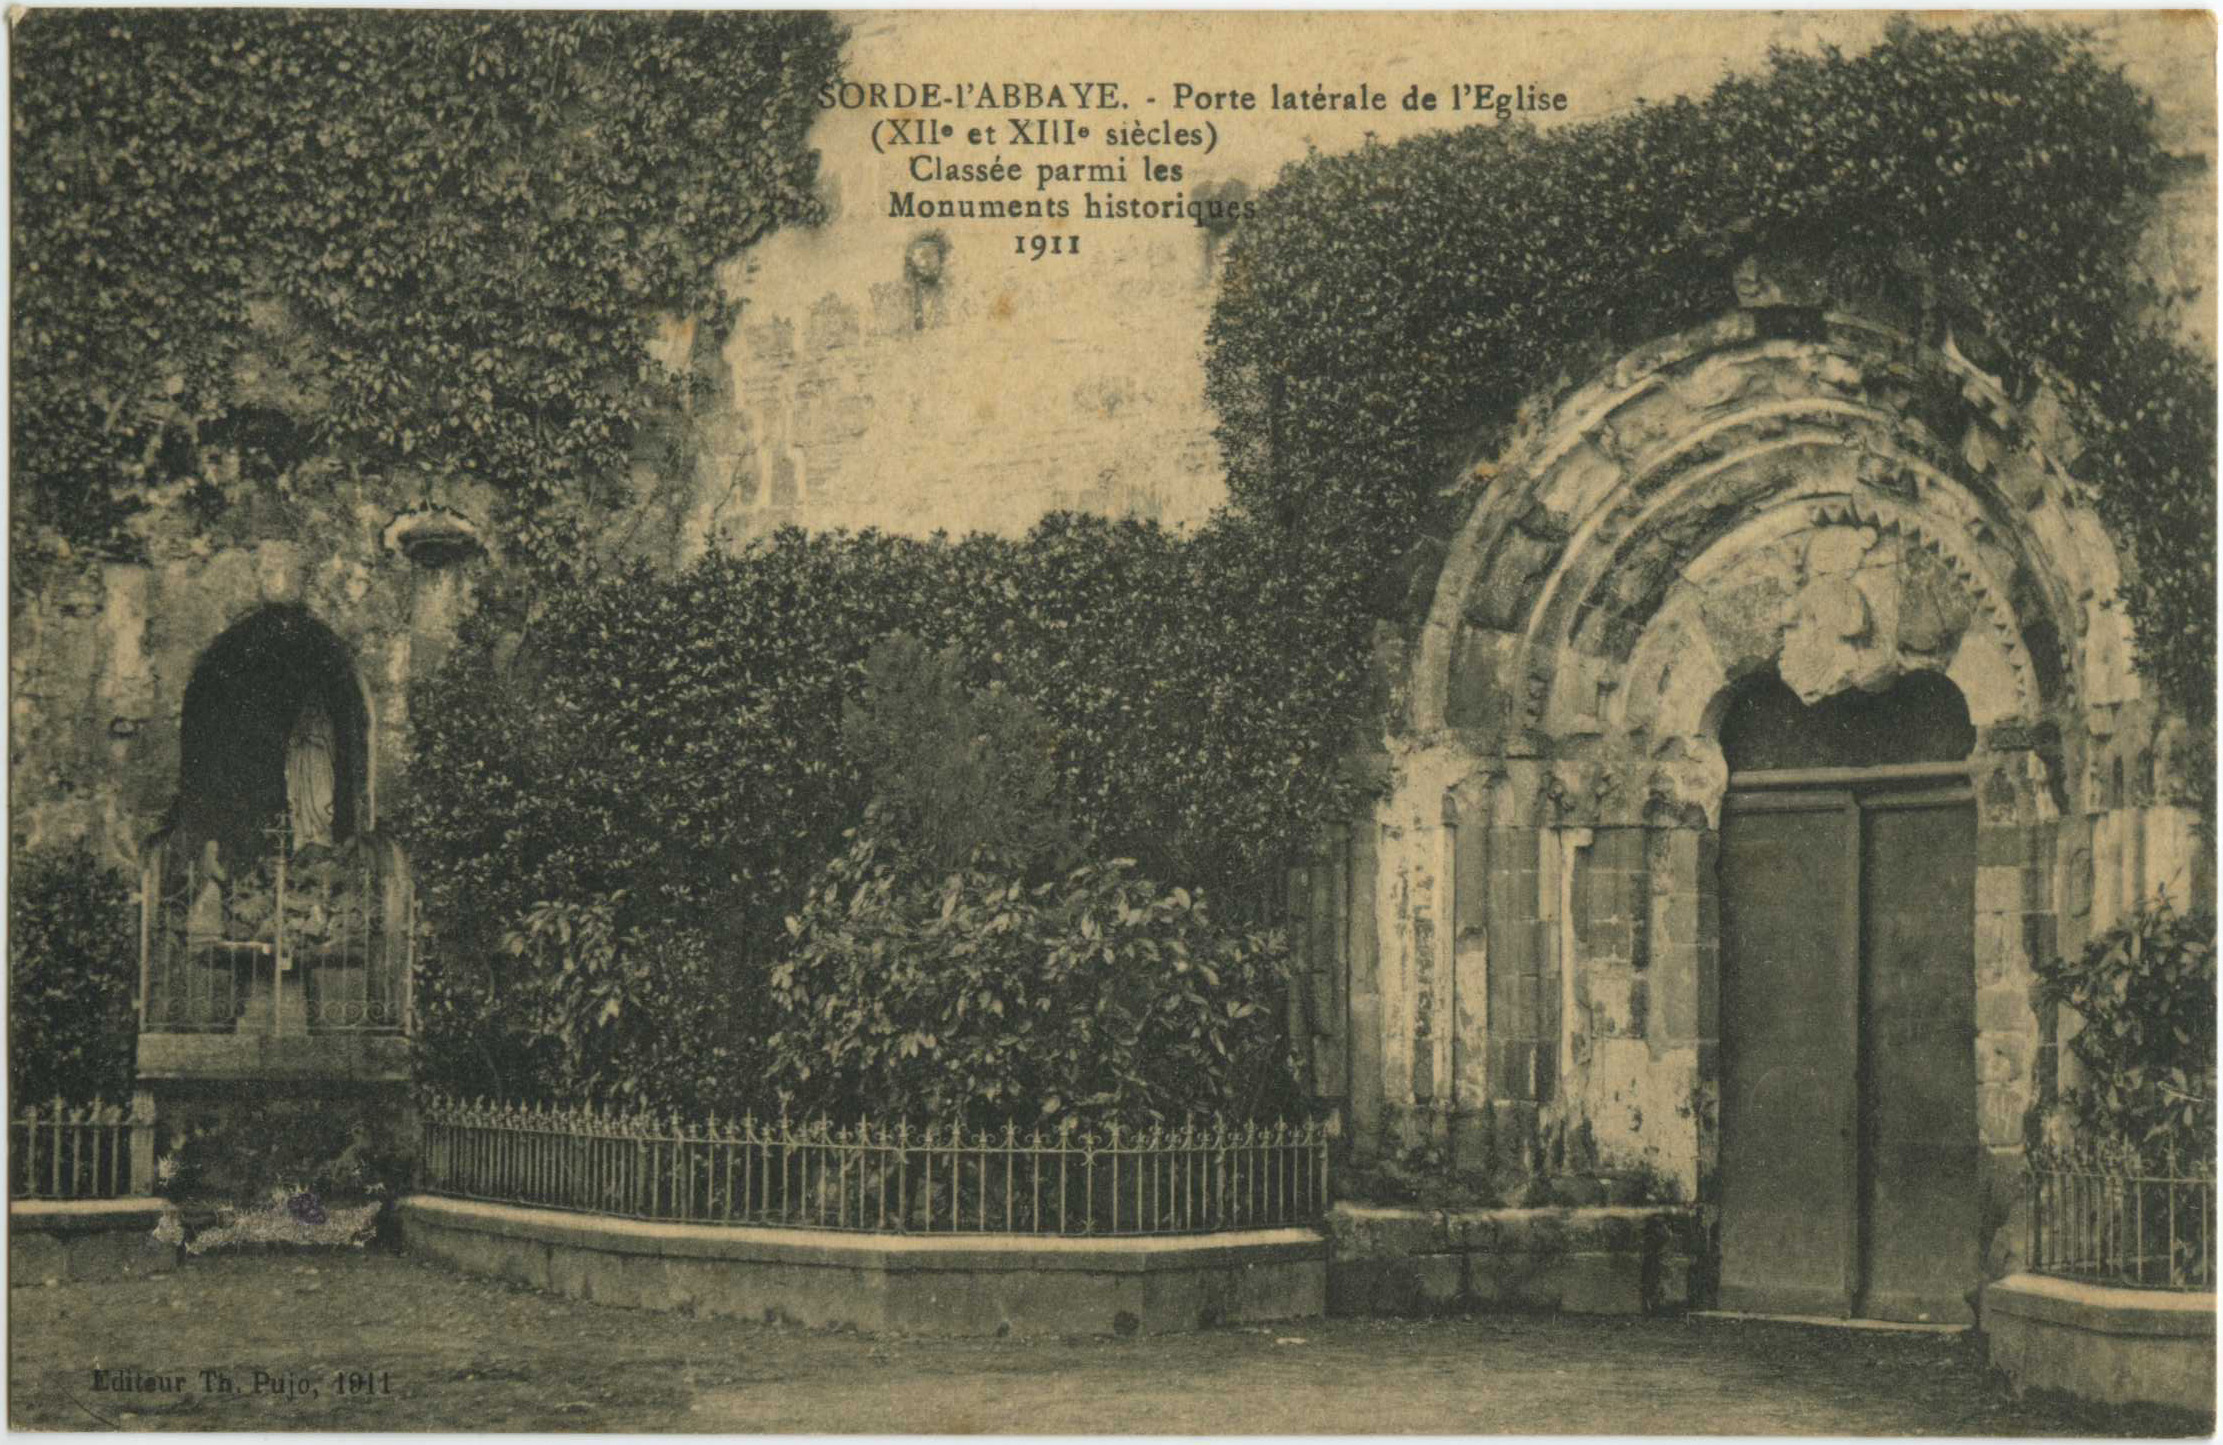 Sorde-l'Abbaye - Porte latérale de l'Eglise (XII<sup>e</sup> et XIII<sup>e</sup> siècles) - Classée parmi les Monuments historiques - 1911